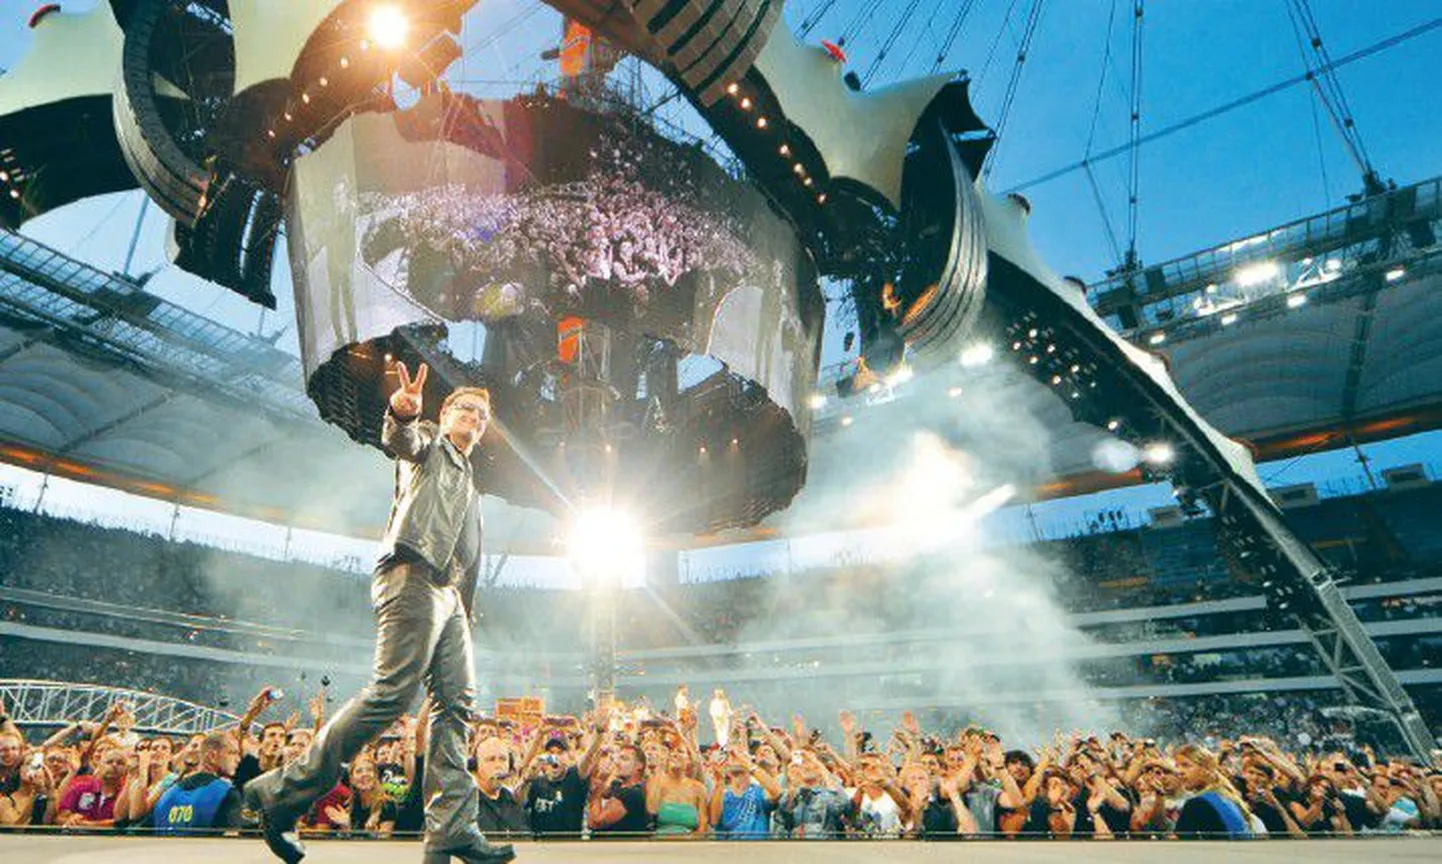 U2 solist Bono on kevadisest seljavigastusest paranenud ja seepärast kontserdi ärajäämise ohtu ei ole.